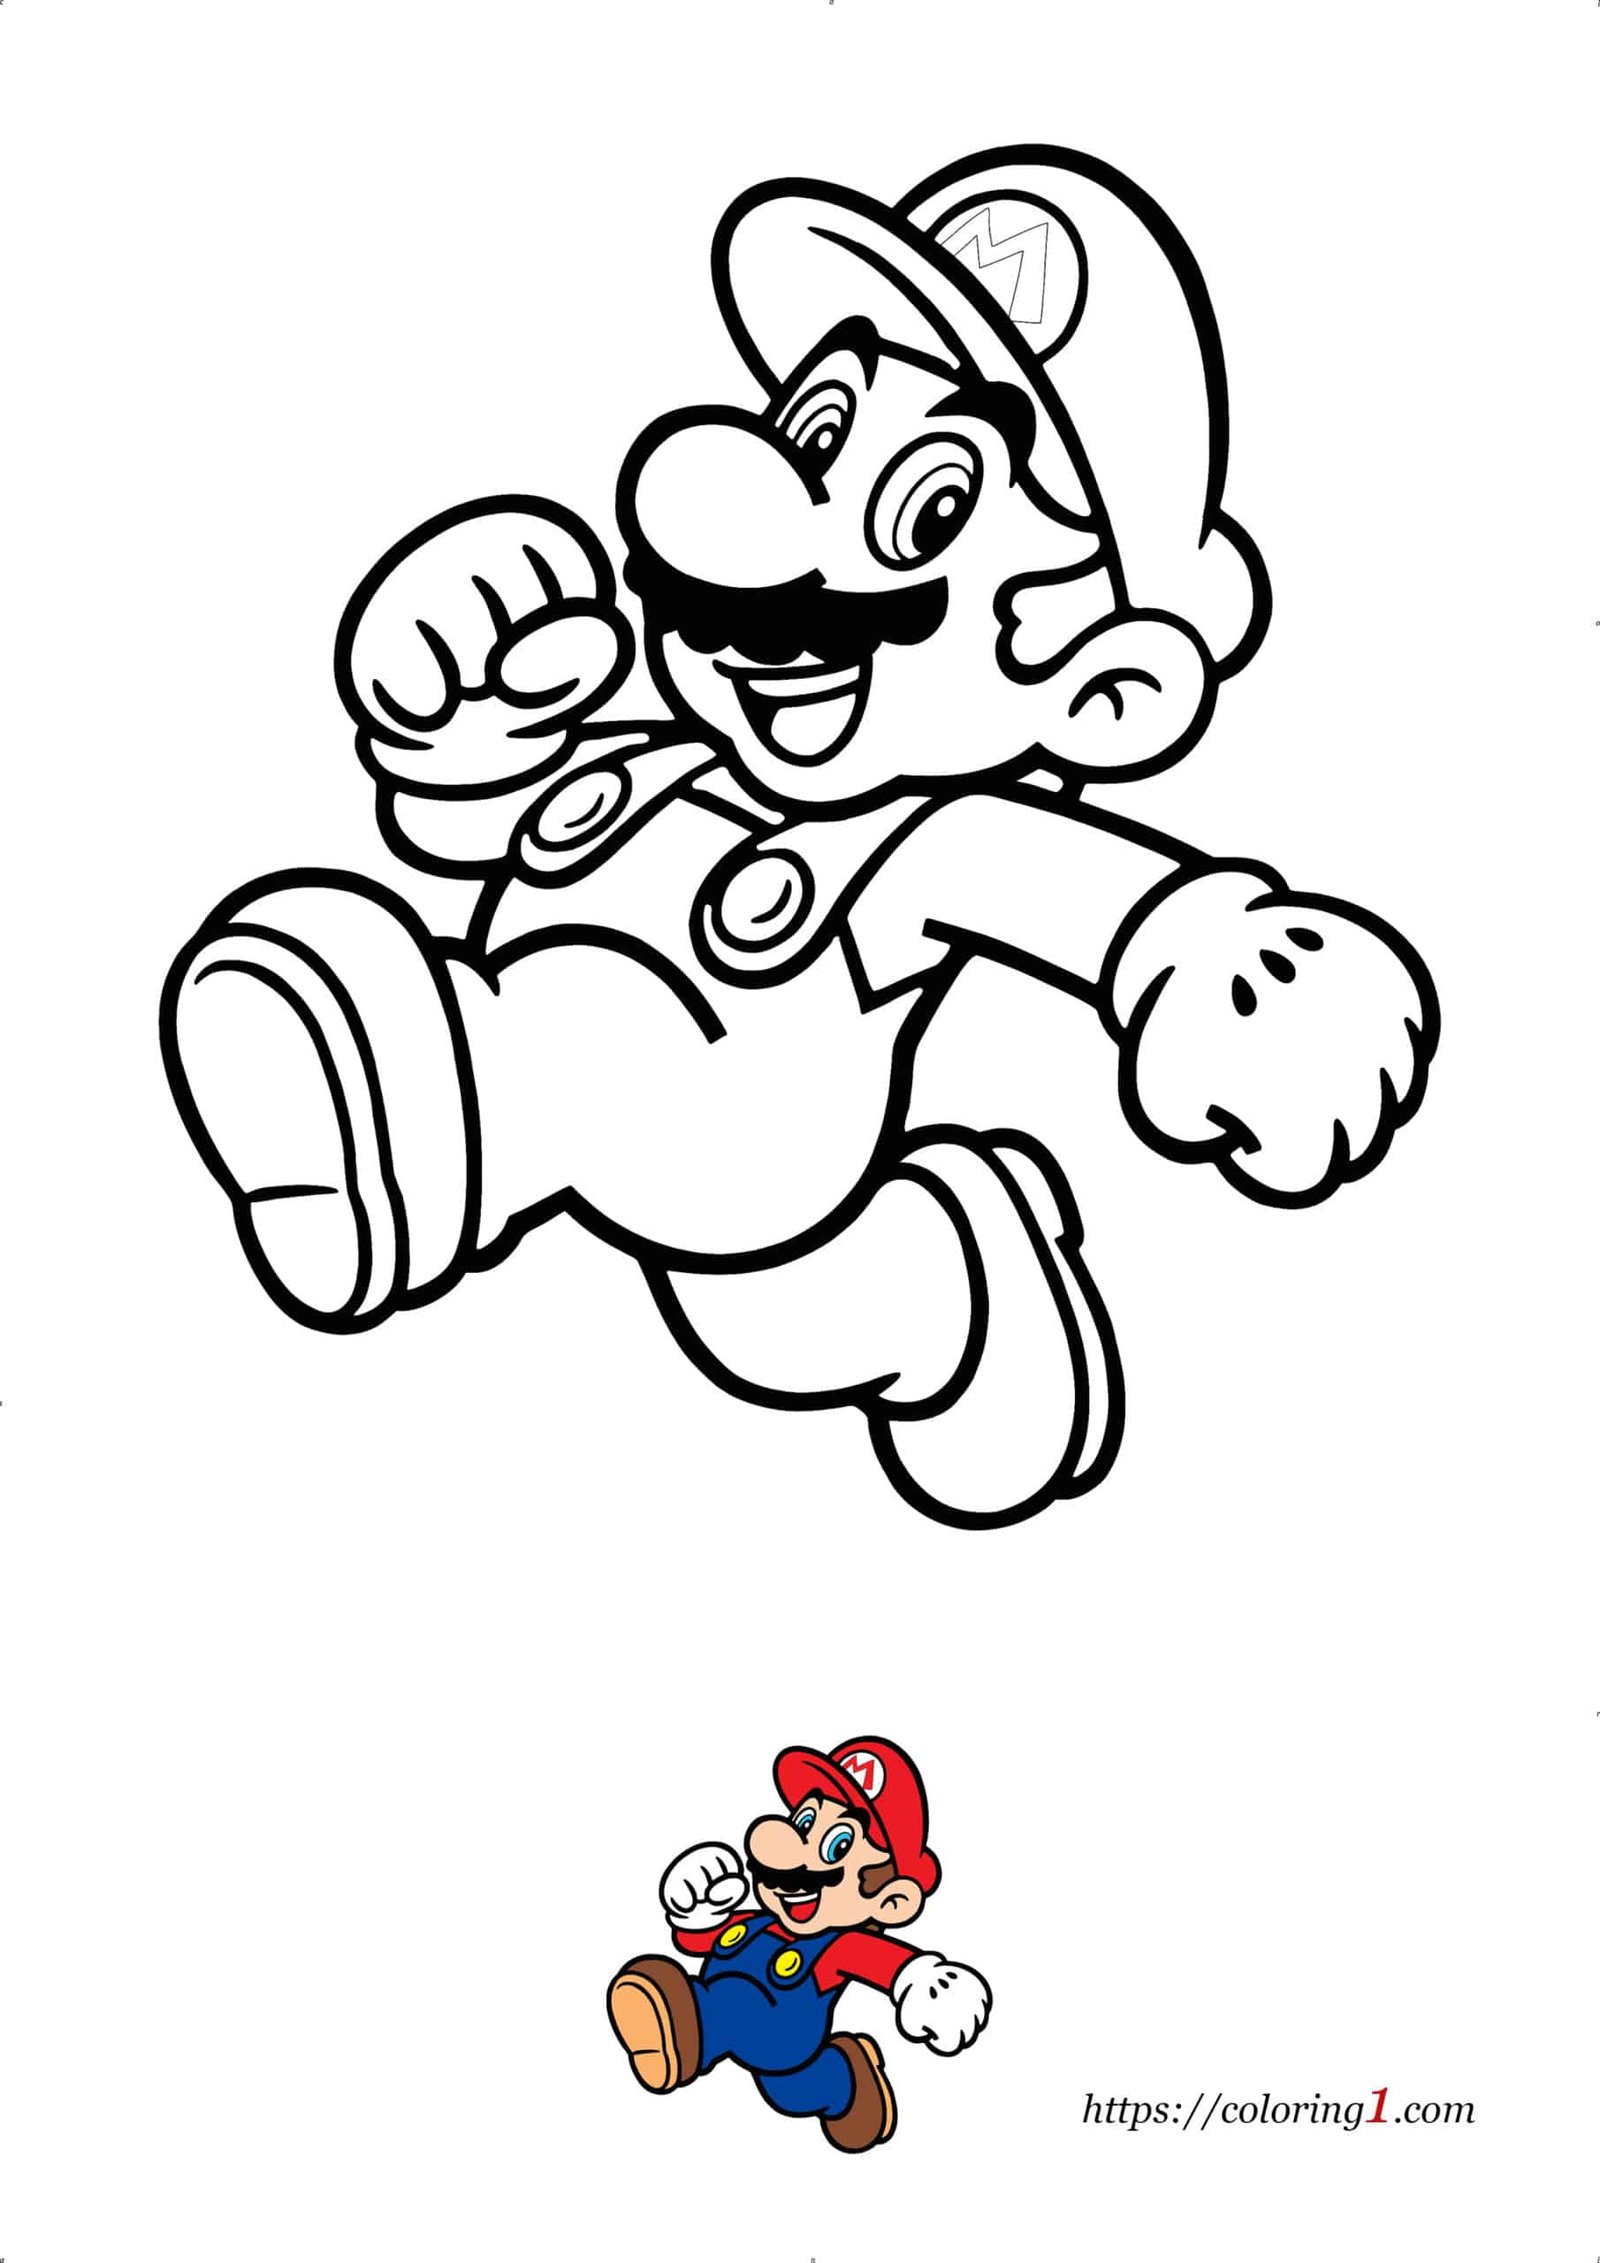 Super Mario kleurplaat om online af te drukken pdf